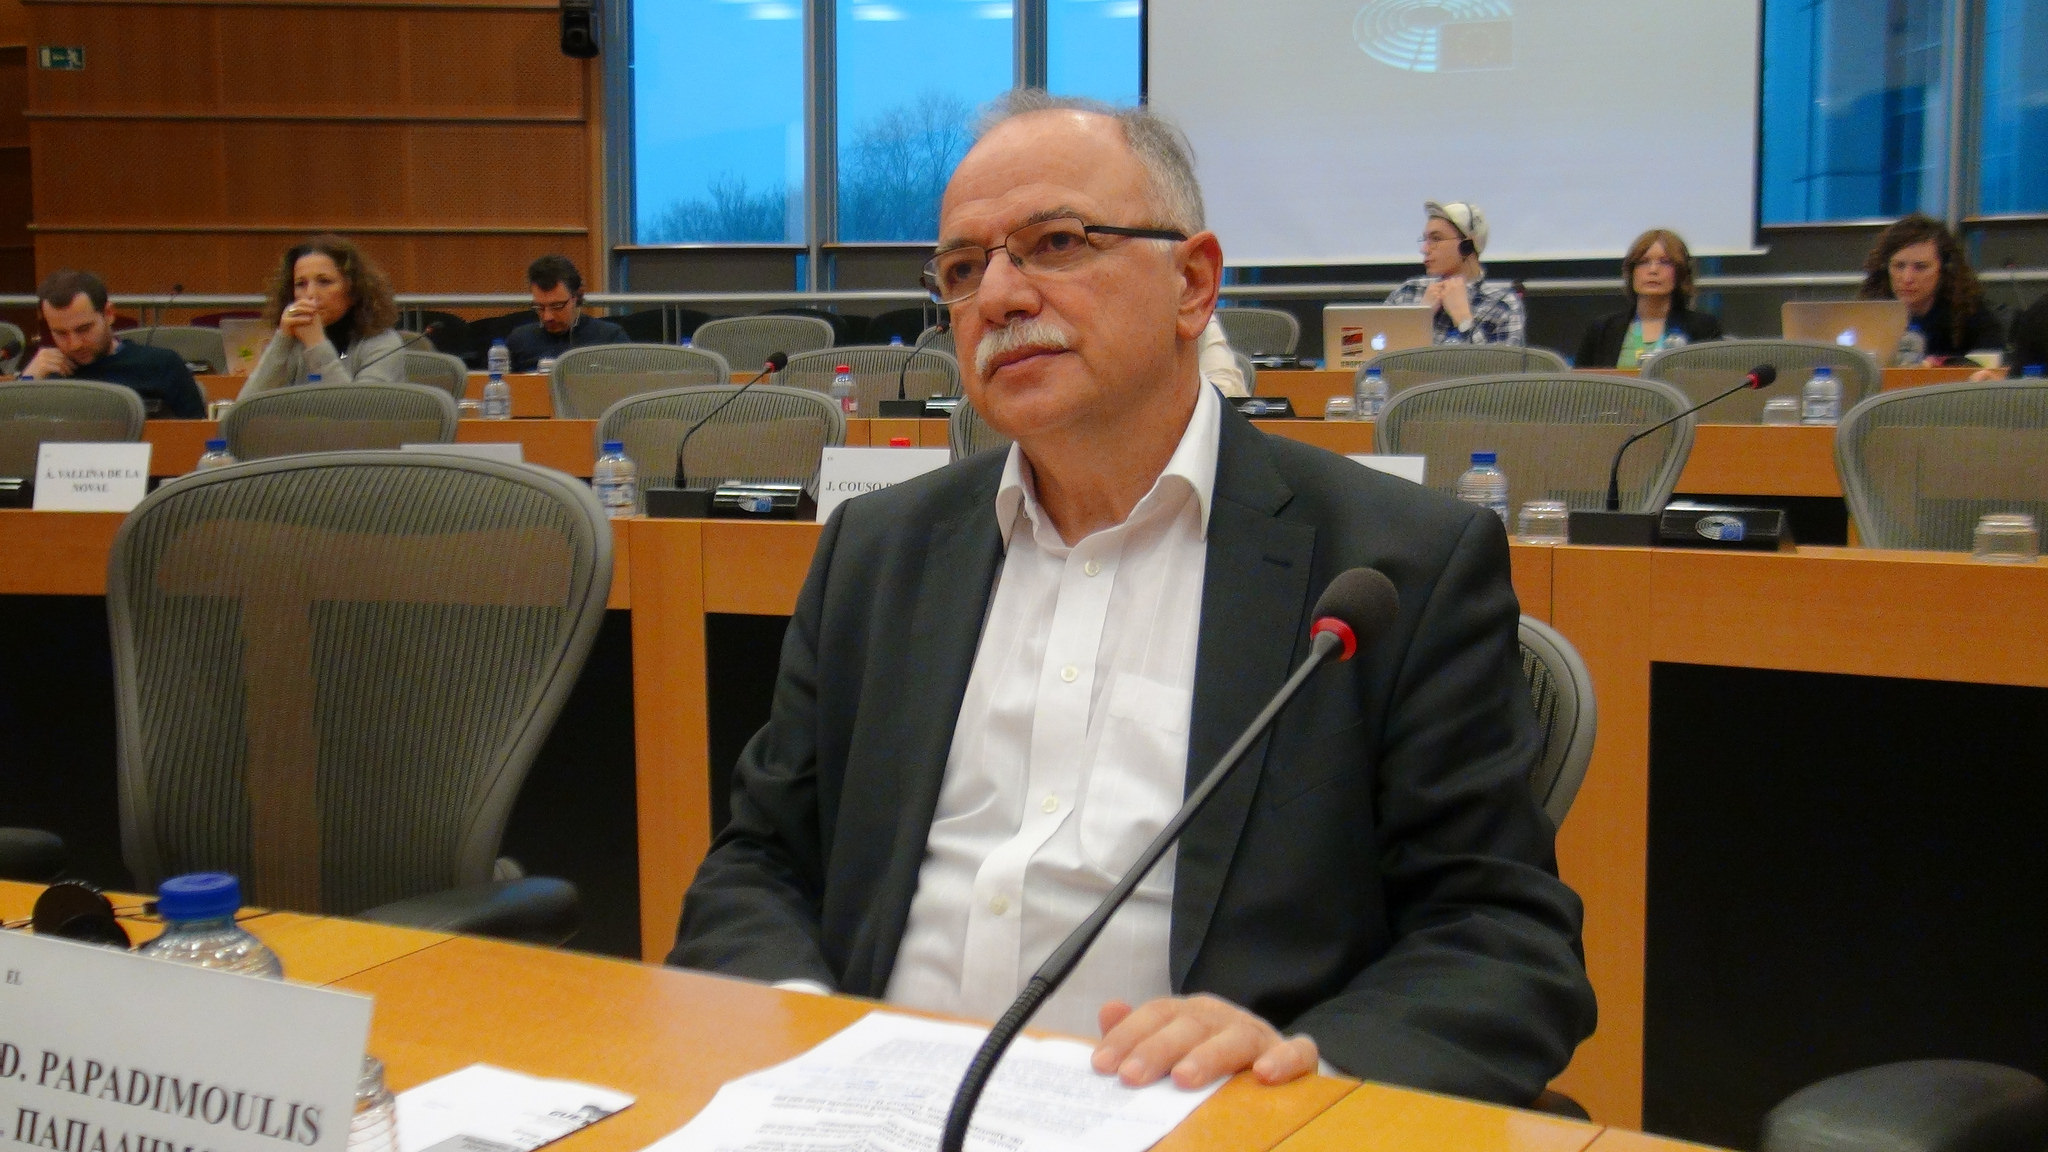 Δημ. Παπαδημούλης: Η επίσκεψη Τσίπρα στο Παρίσι θα δώσει ένα ακόμα σήμα ότι η Ελλάδα ανακάμπτει και προσφέρεται για επενδύσεις